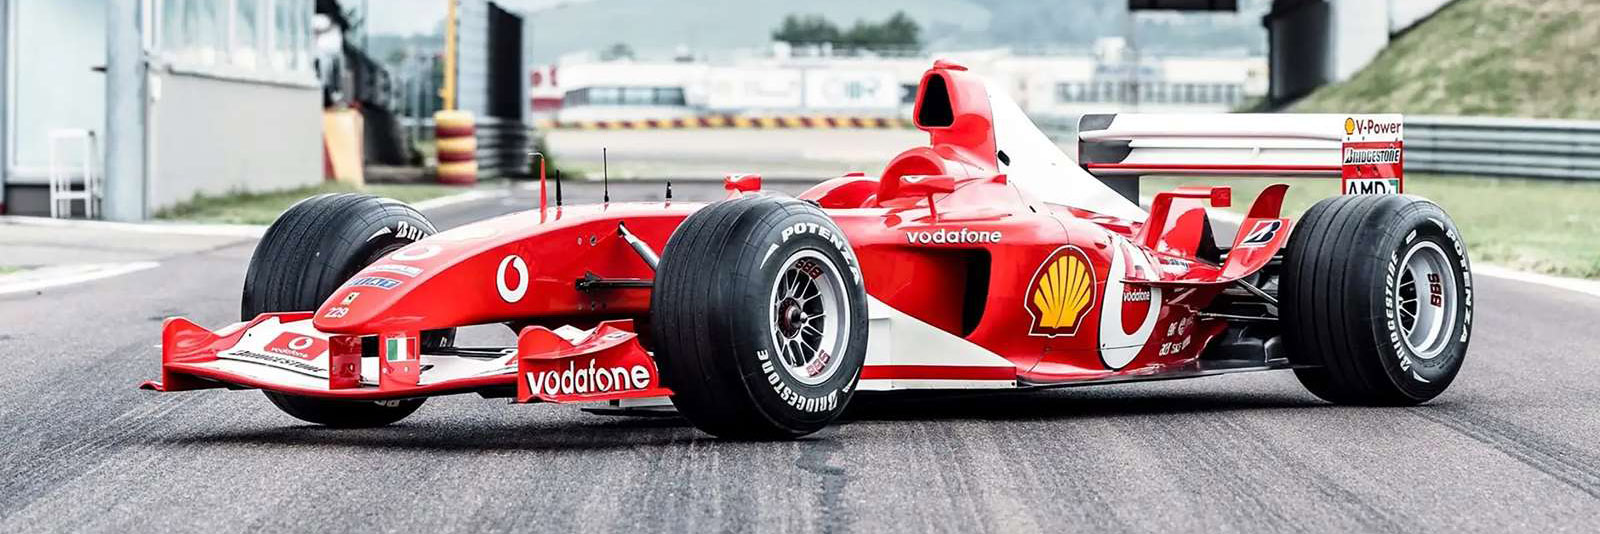 The Ferrari F2003 F1 car at Fiorano